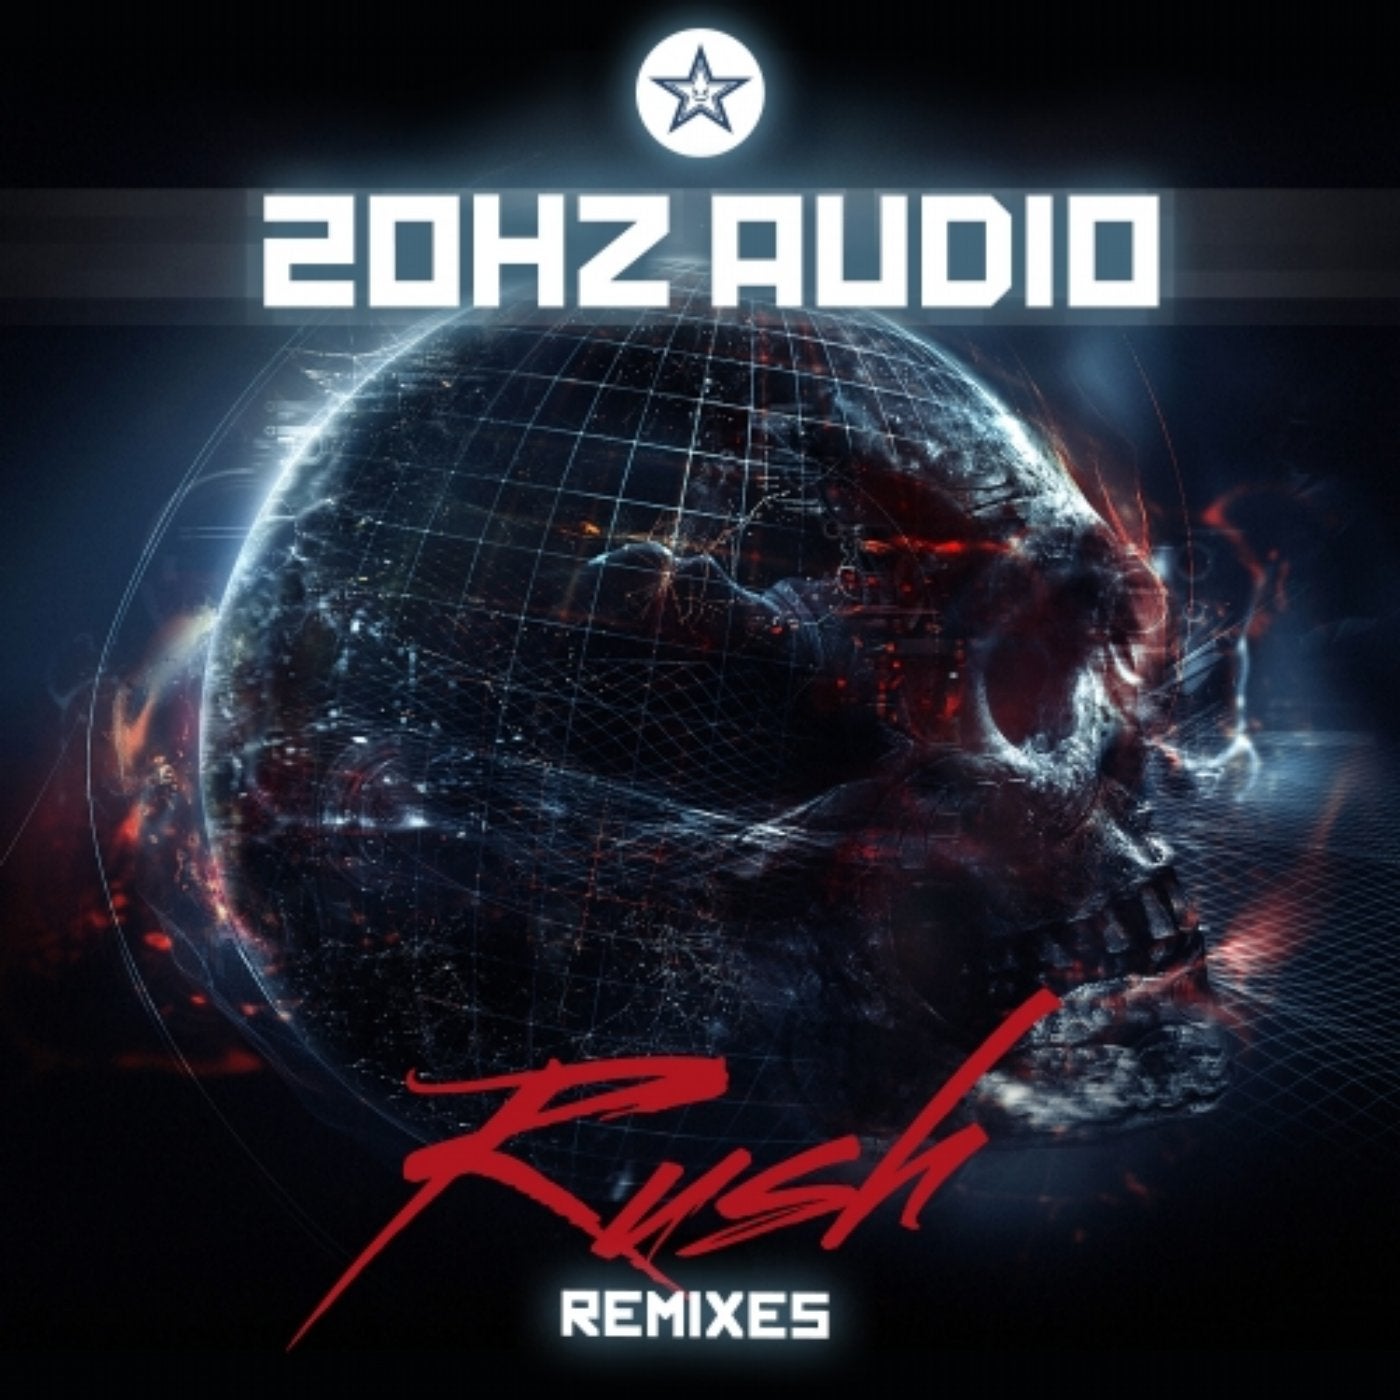 Rush (Remixes)